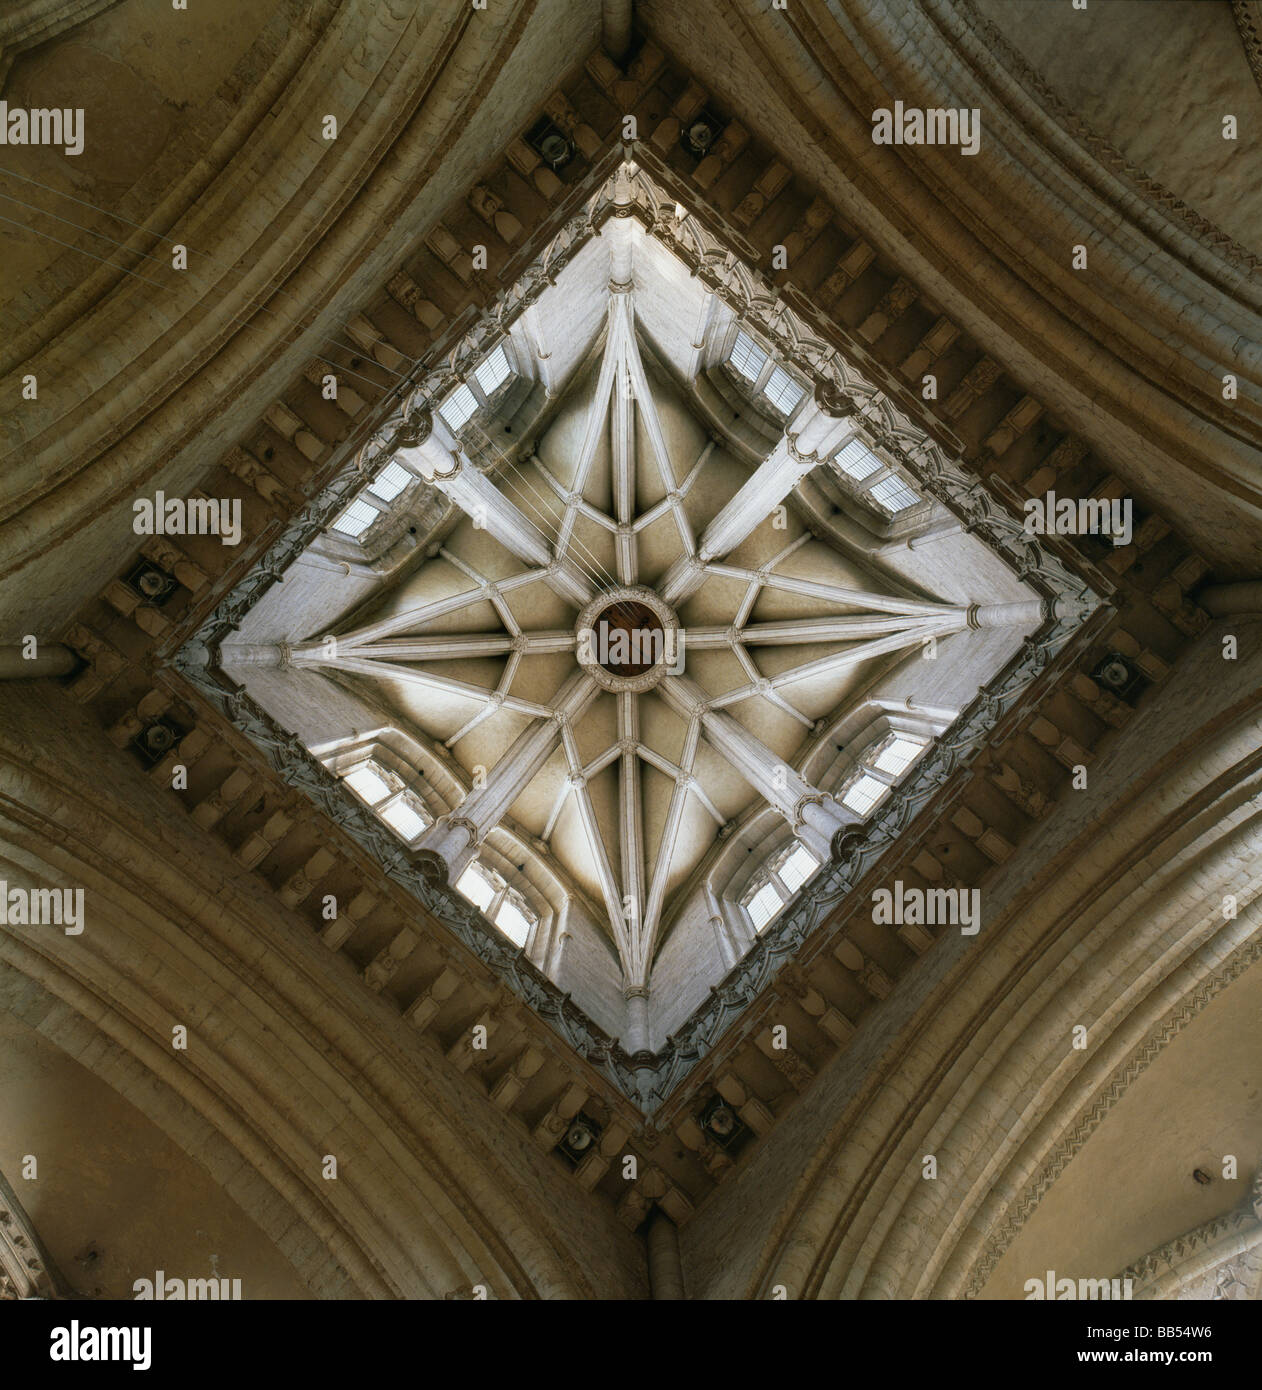 La cathédrale de Durham cso en forme d'étoile dans la tour centrale, 15e siècle Banque D'Images